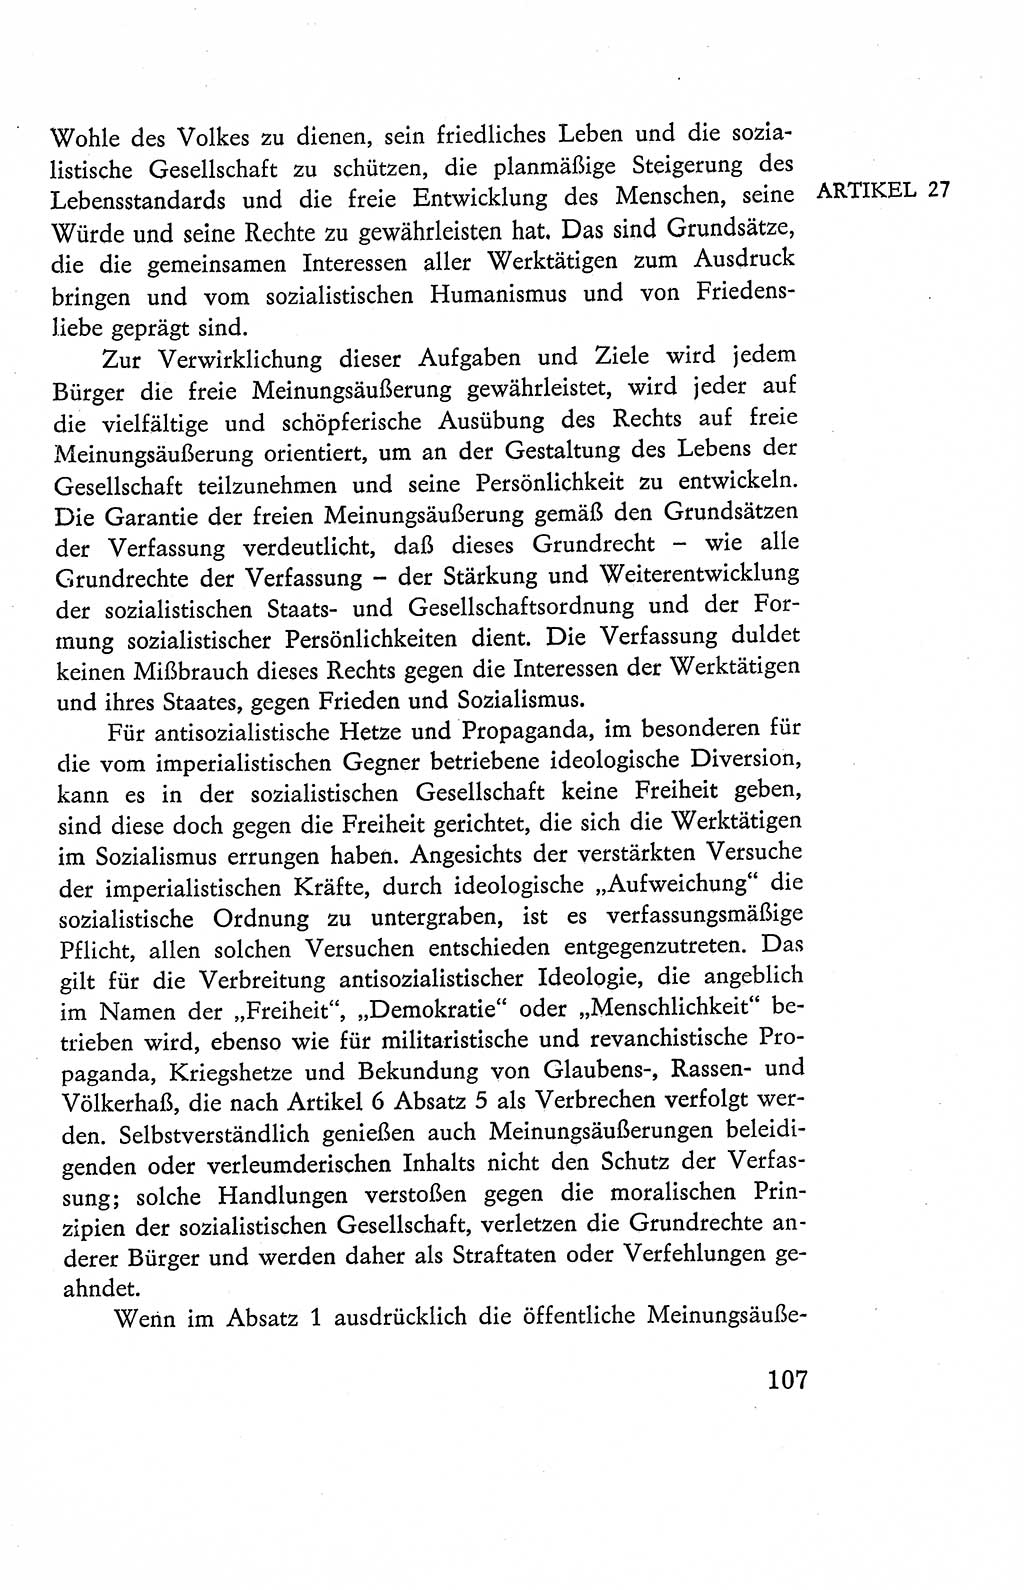 Verfassung der Deutschen Demokratischen Republik (DDR), Dokumente, Kommentar 1969, Band 2, Seite 107 (Verf. DDR Dok. Komm. 1969, Bd. 2, S. 107)